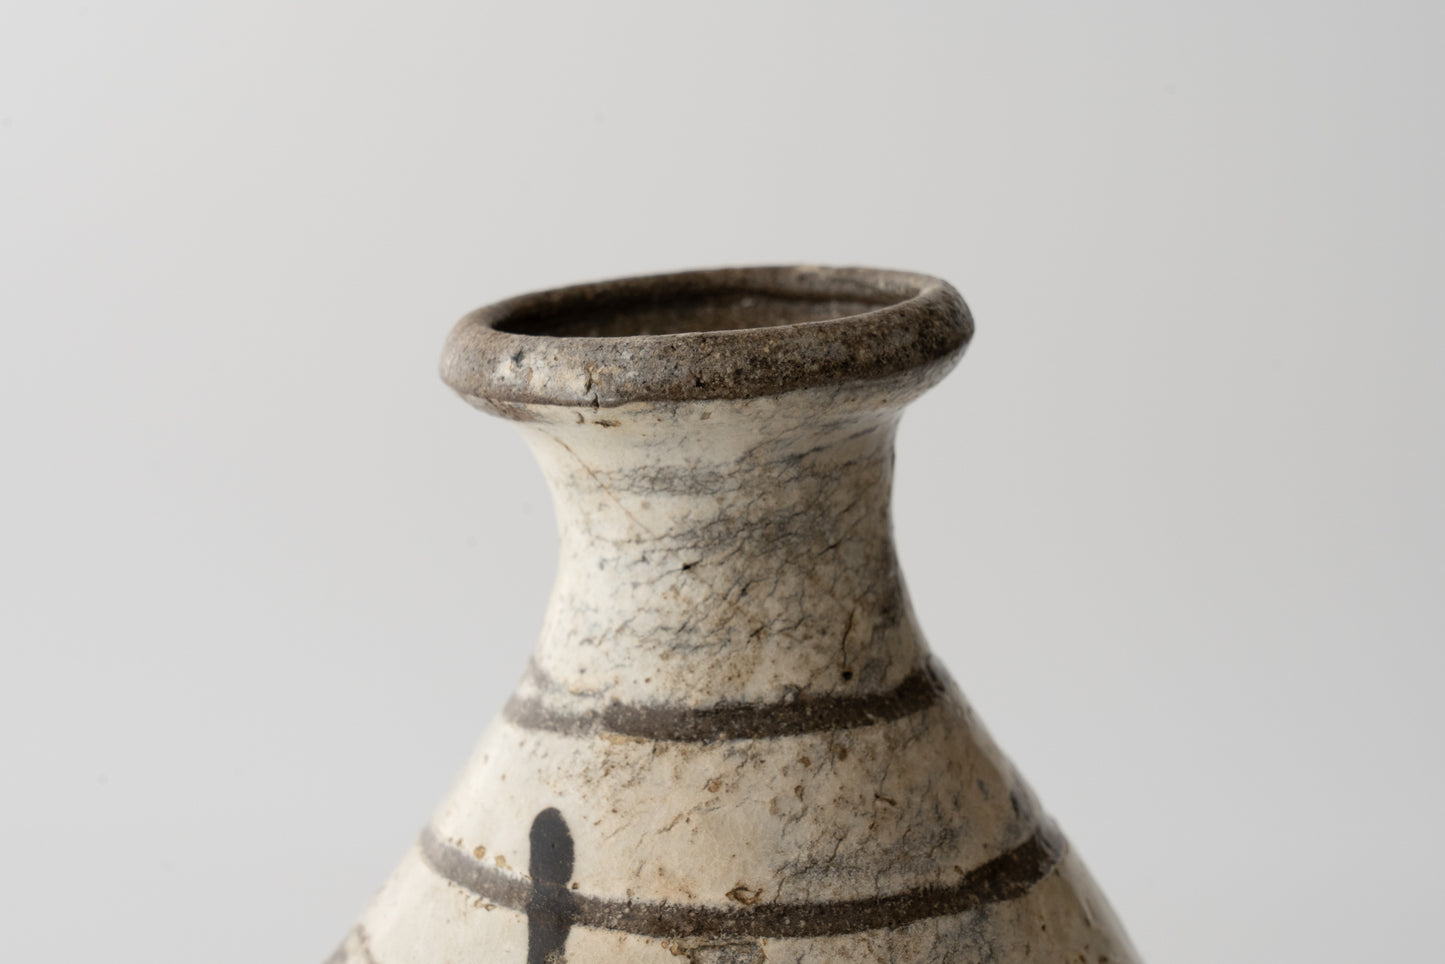 Sake bottle with iron painting from Mt. Gyeryongsan kiln